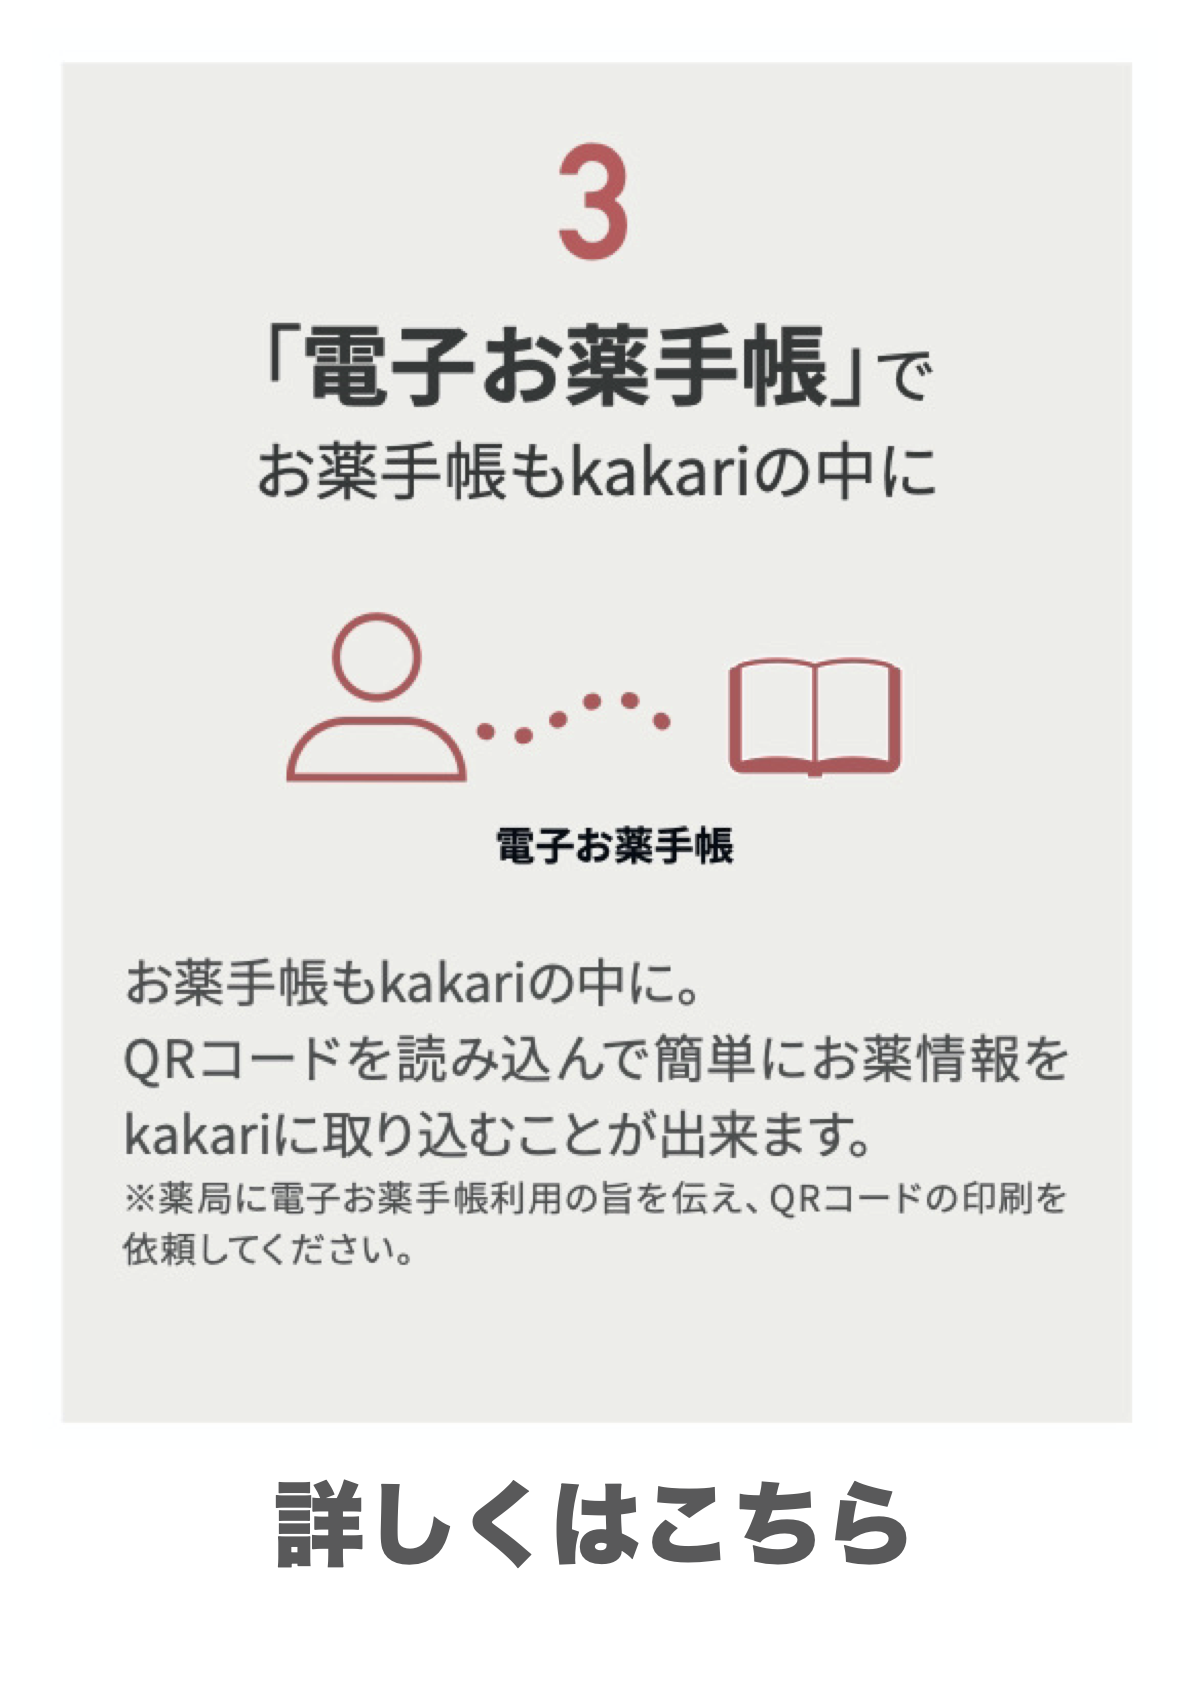 処方せん送信&お薬手帳アプリ(Kakari)の機能3